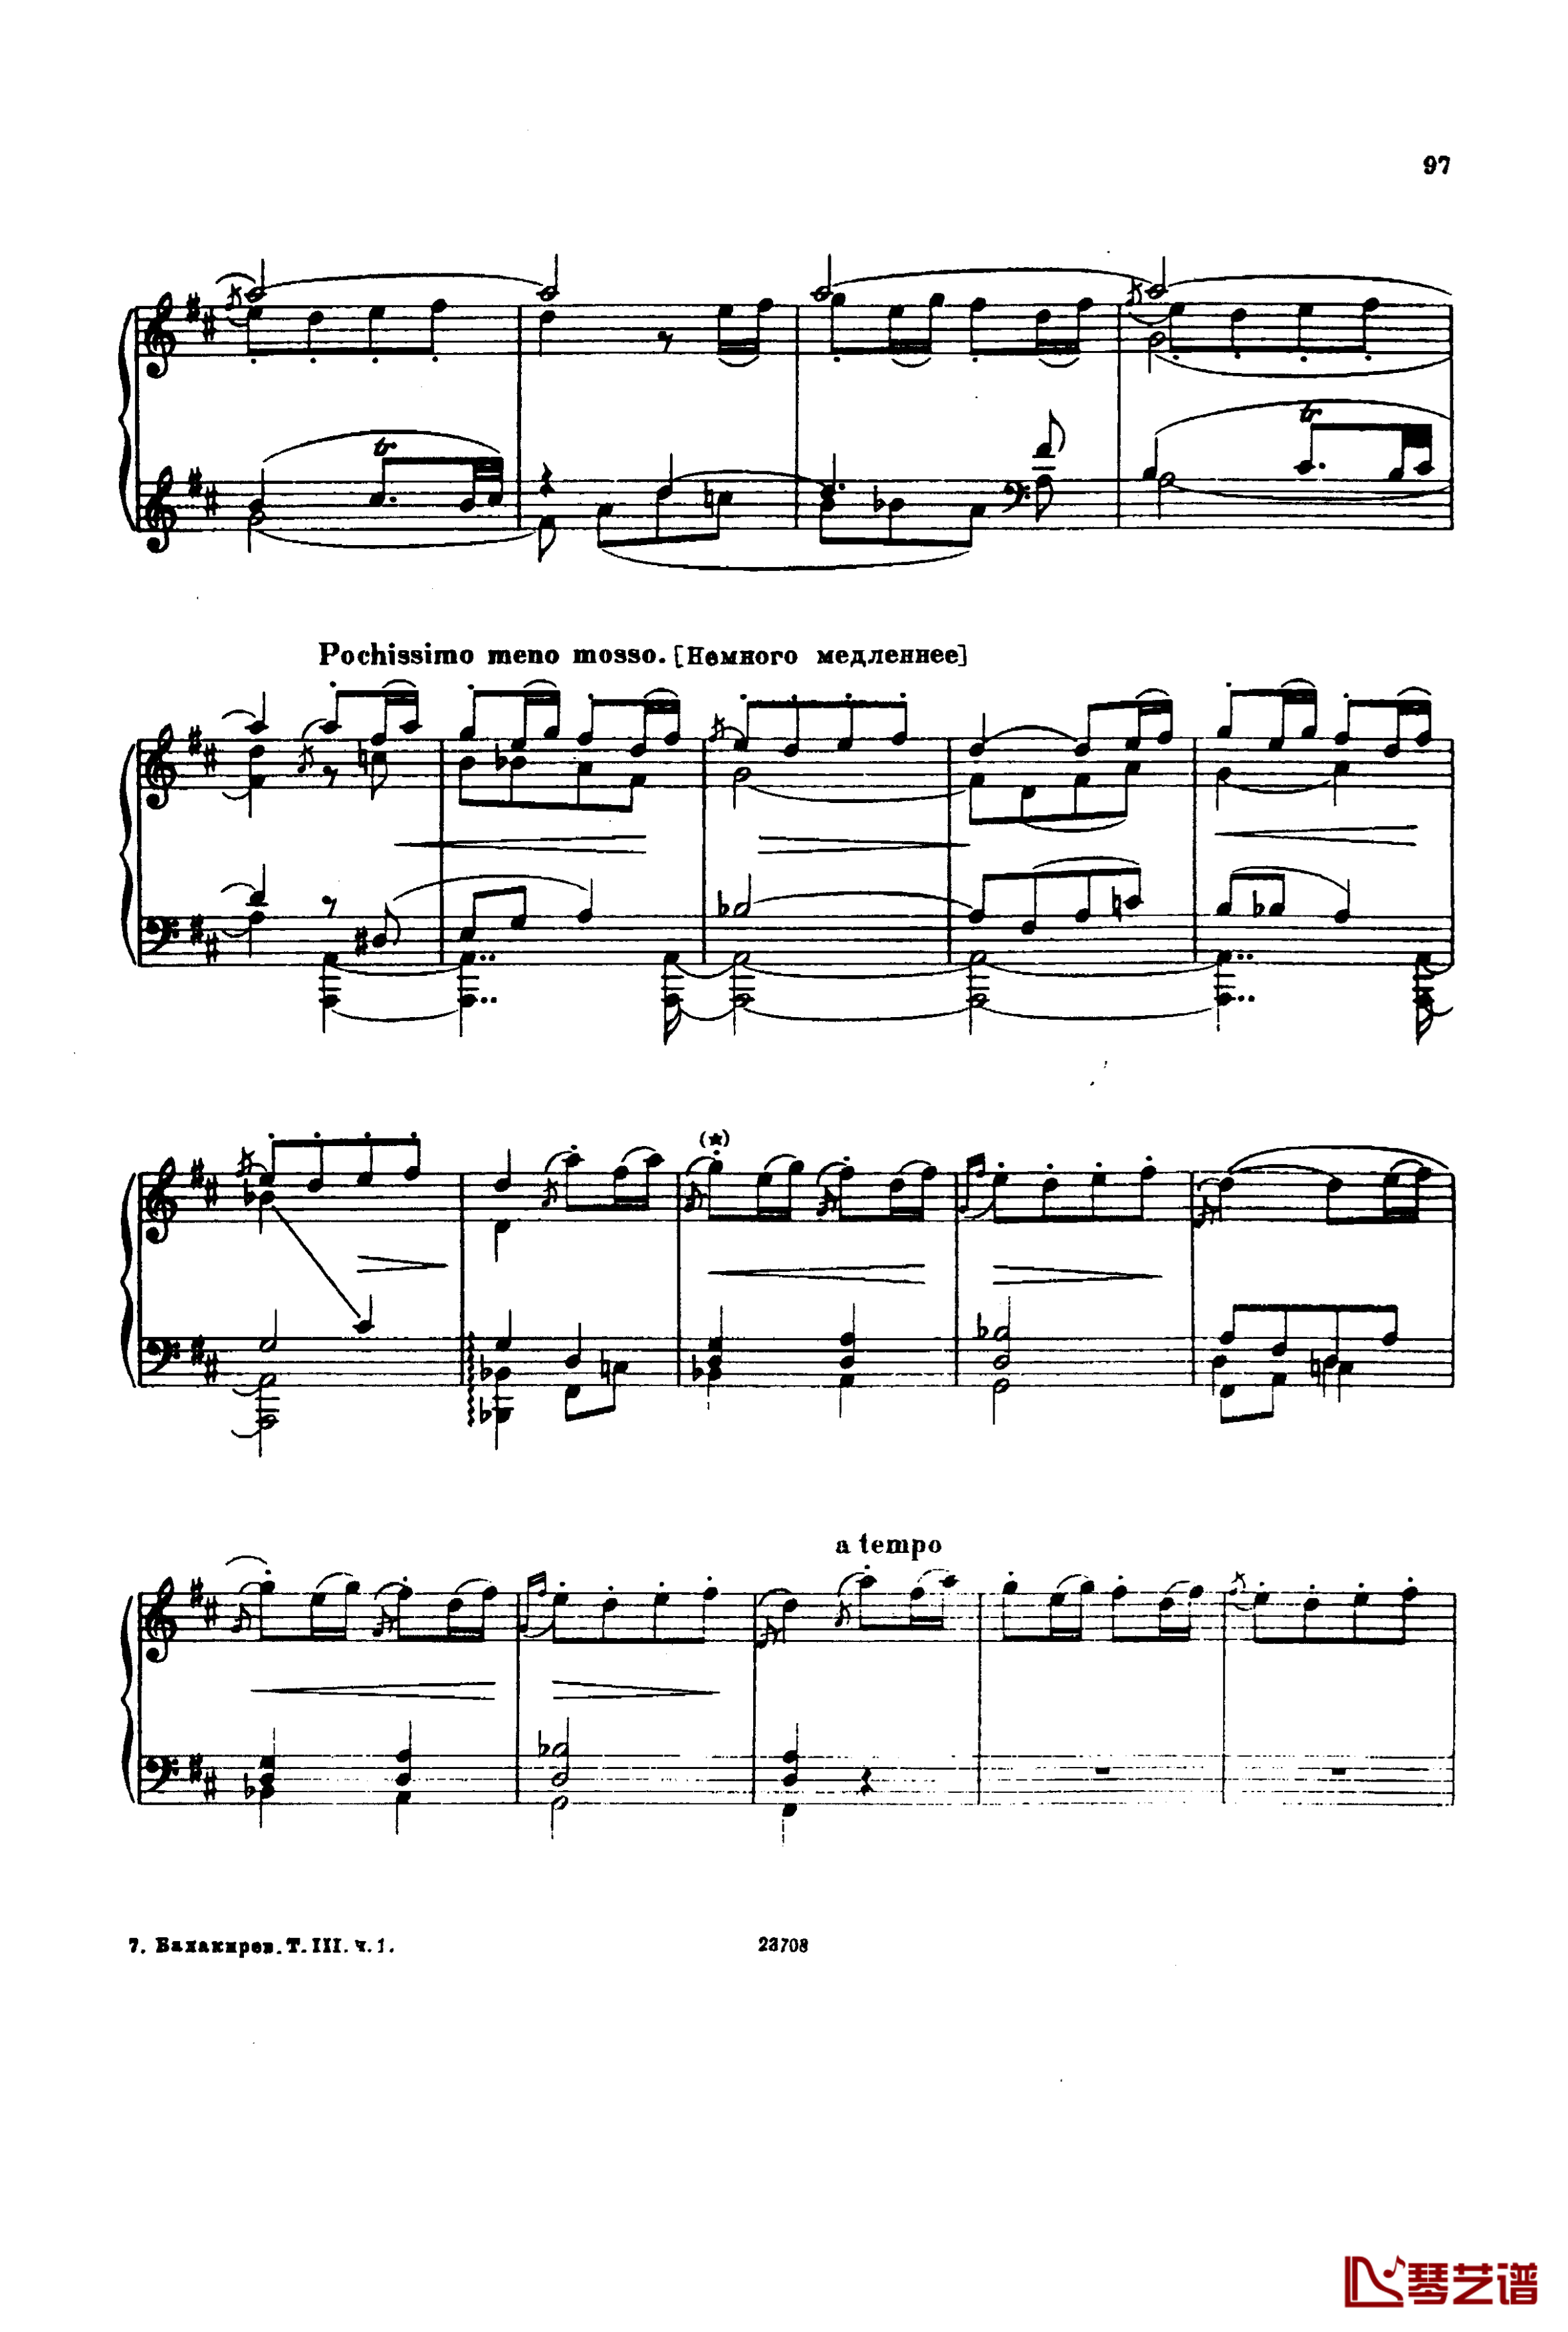 卡玛林斯卡亚幻想曲钢琴谱-格林卡11